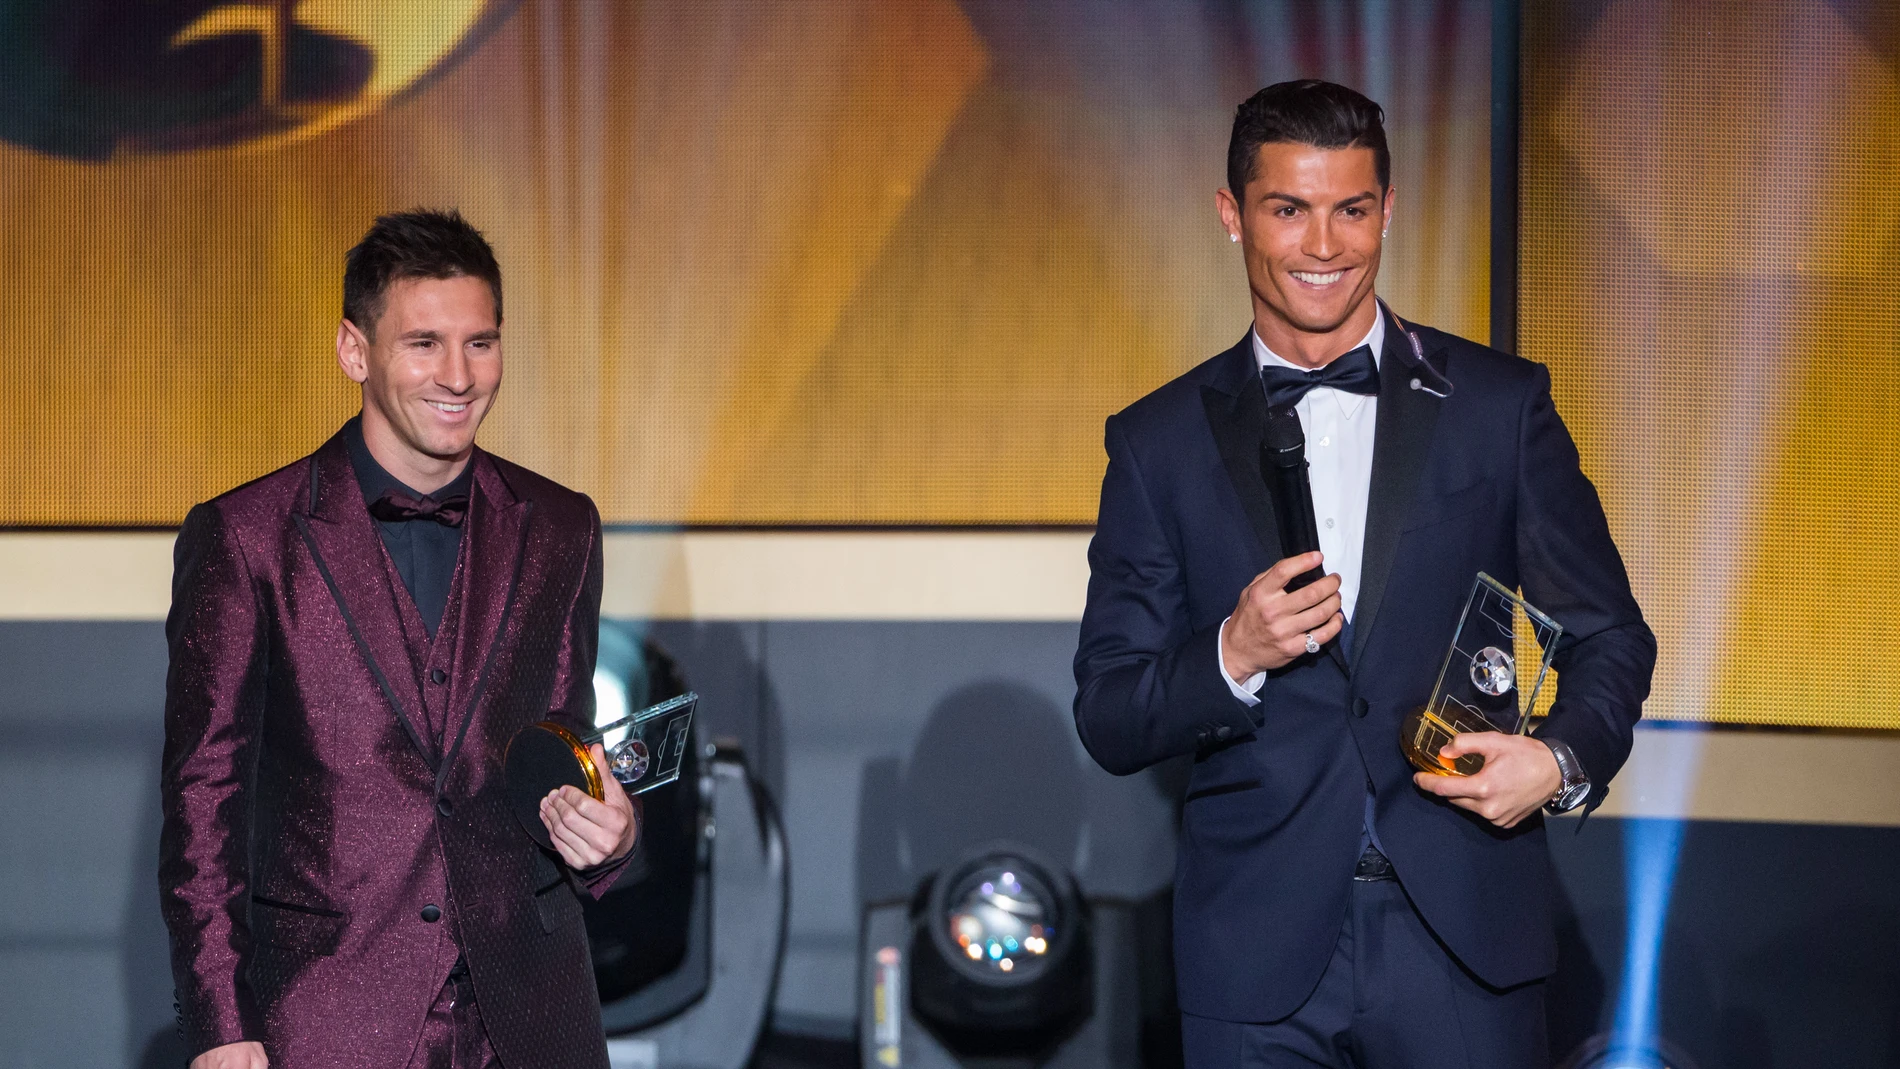 Leo Messi y Cristiano Ronaldo